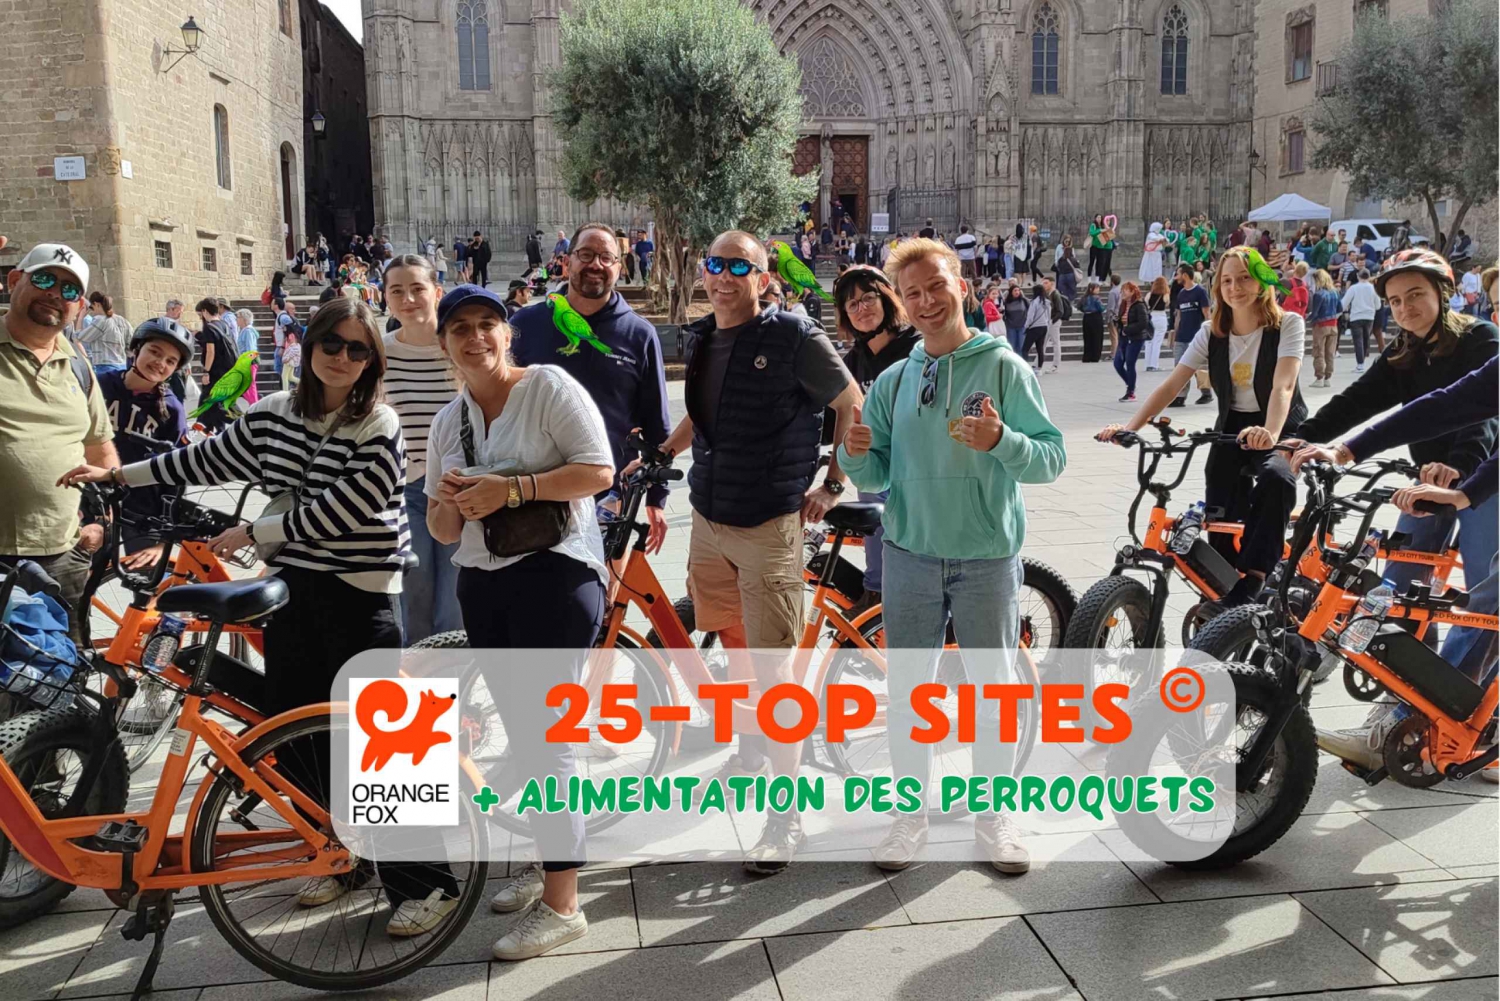 Barcelona Tour💕 met Franse gids 25-тop bezienswaardigheden, fiets/ebike